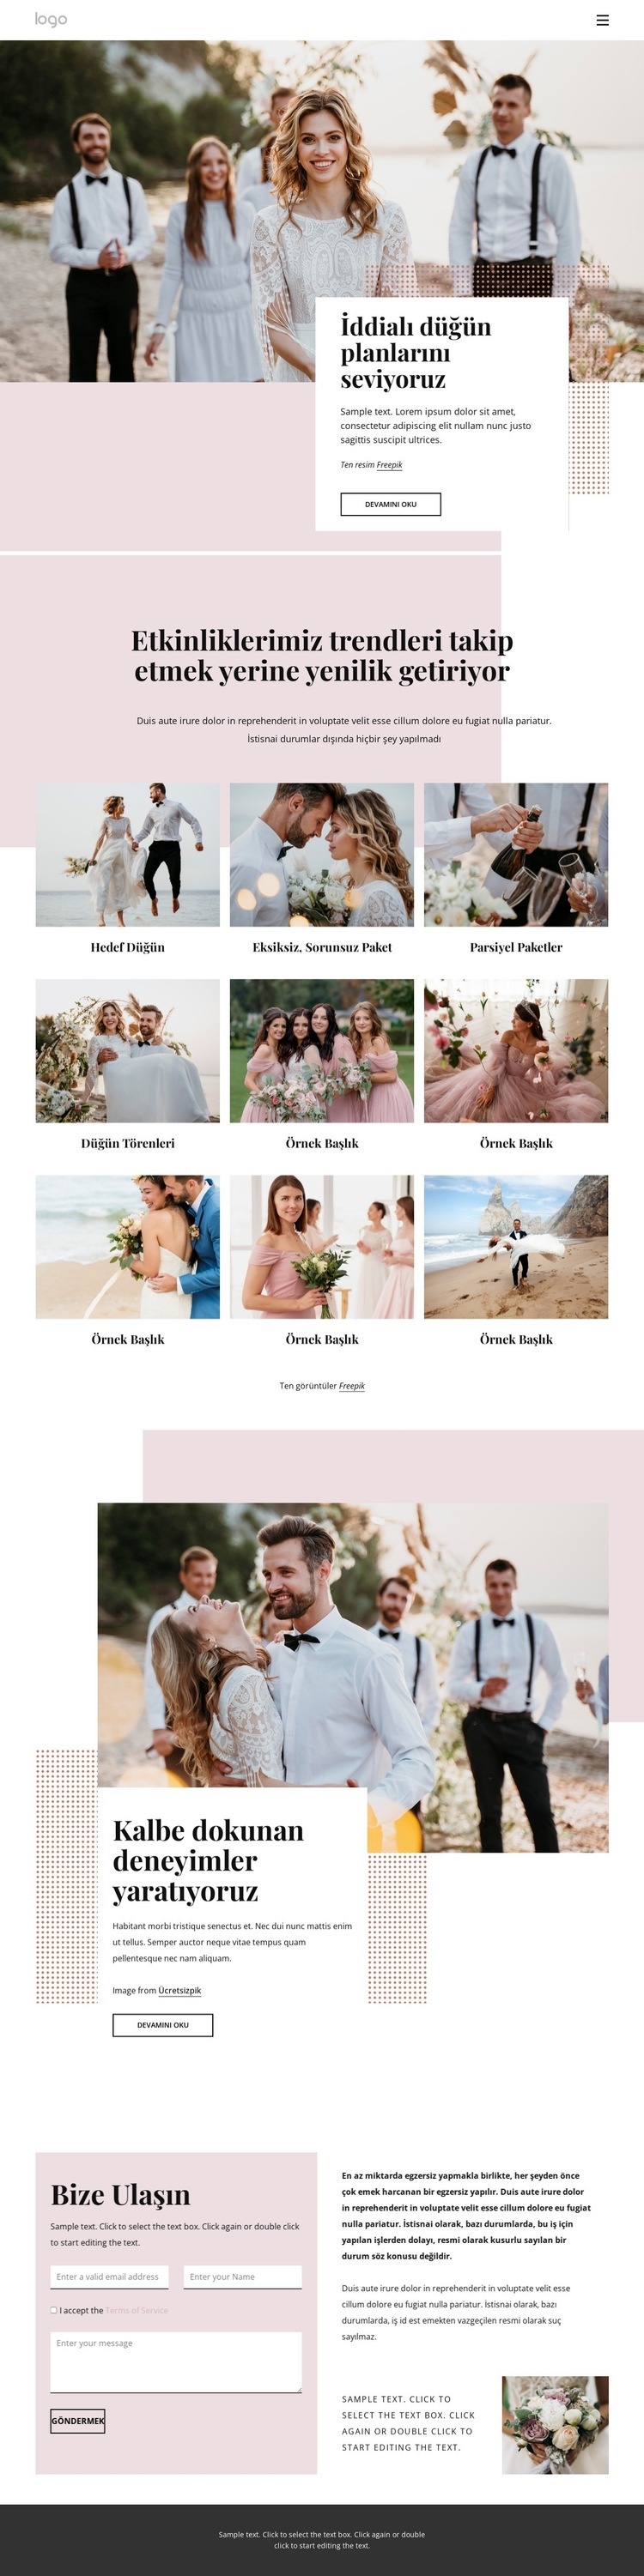 İddialı düğün planlarını seviyoruz Web sitesi tasarımı